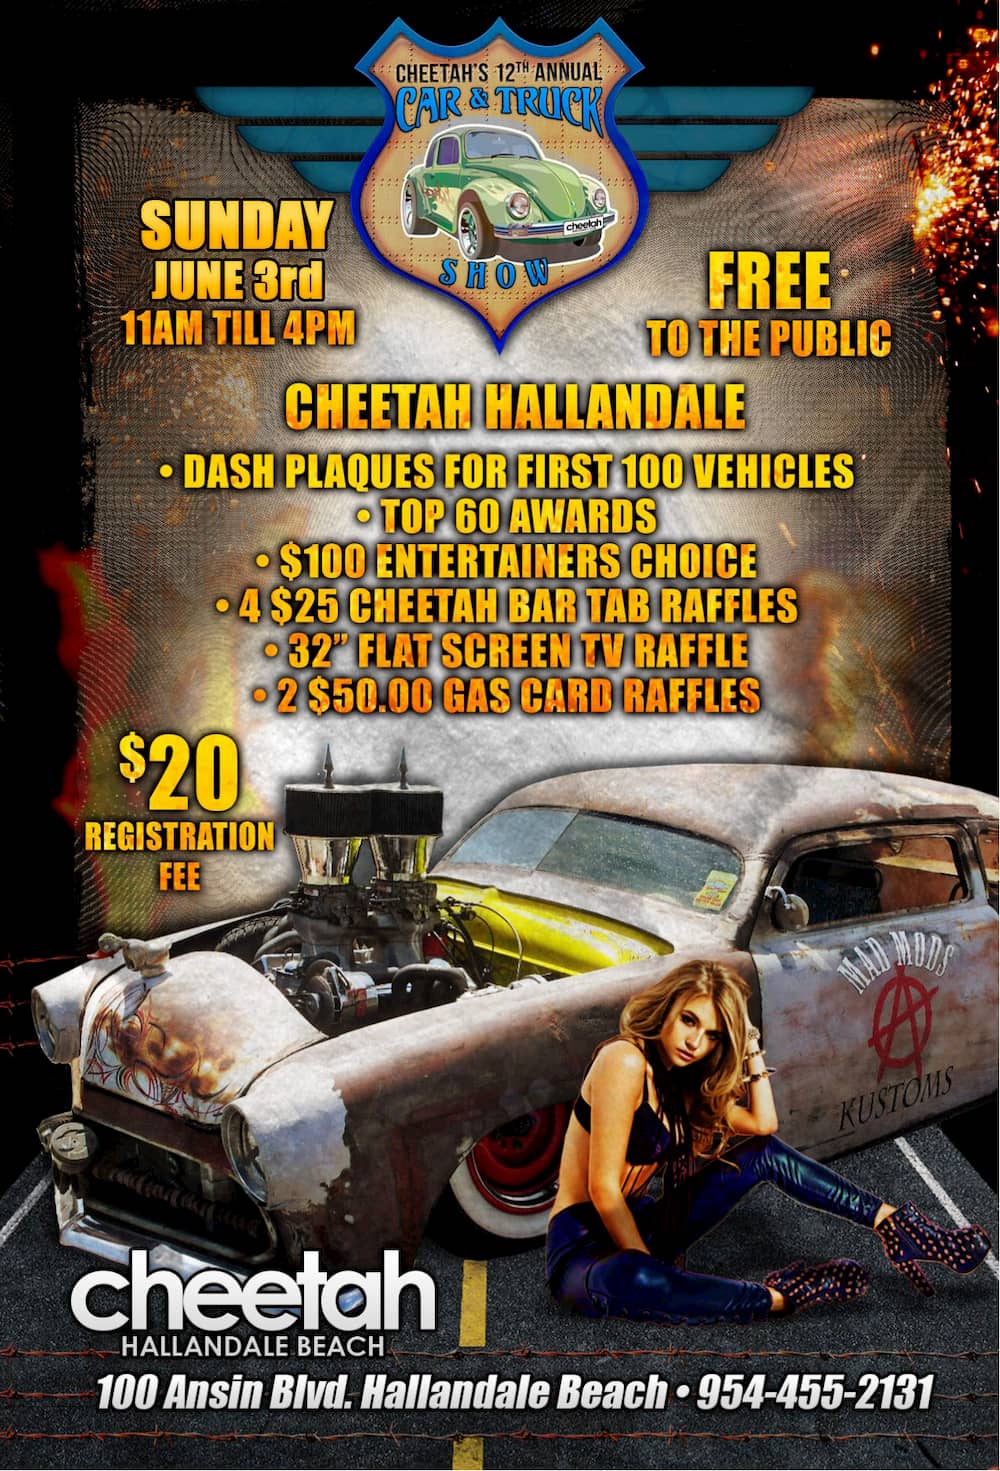 12th annual Cheetah car & truck show in Hallandale Beach